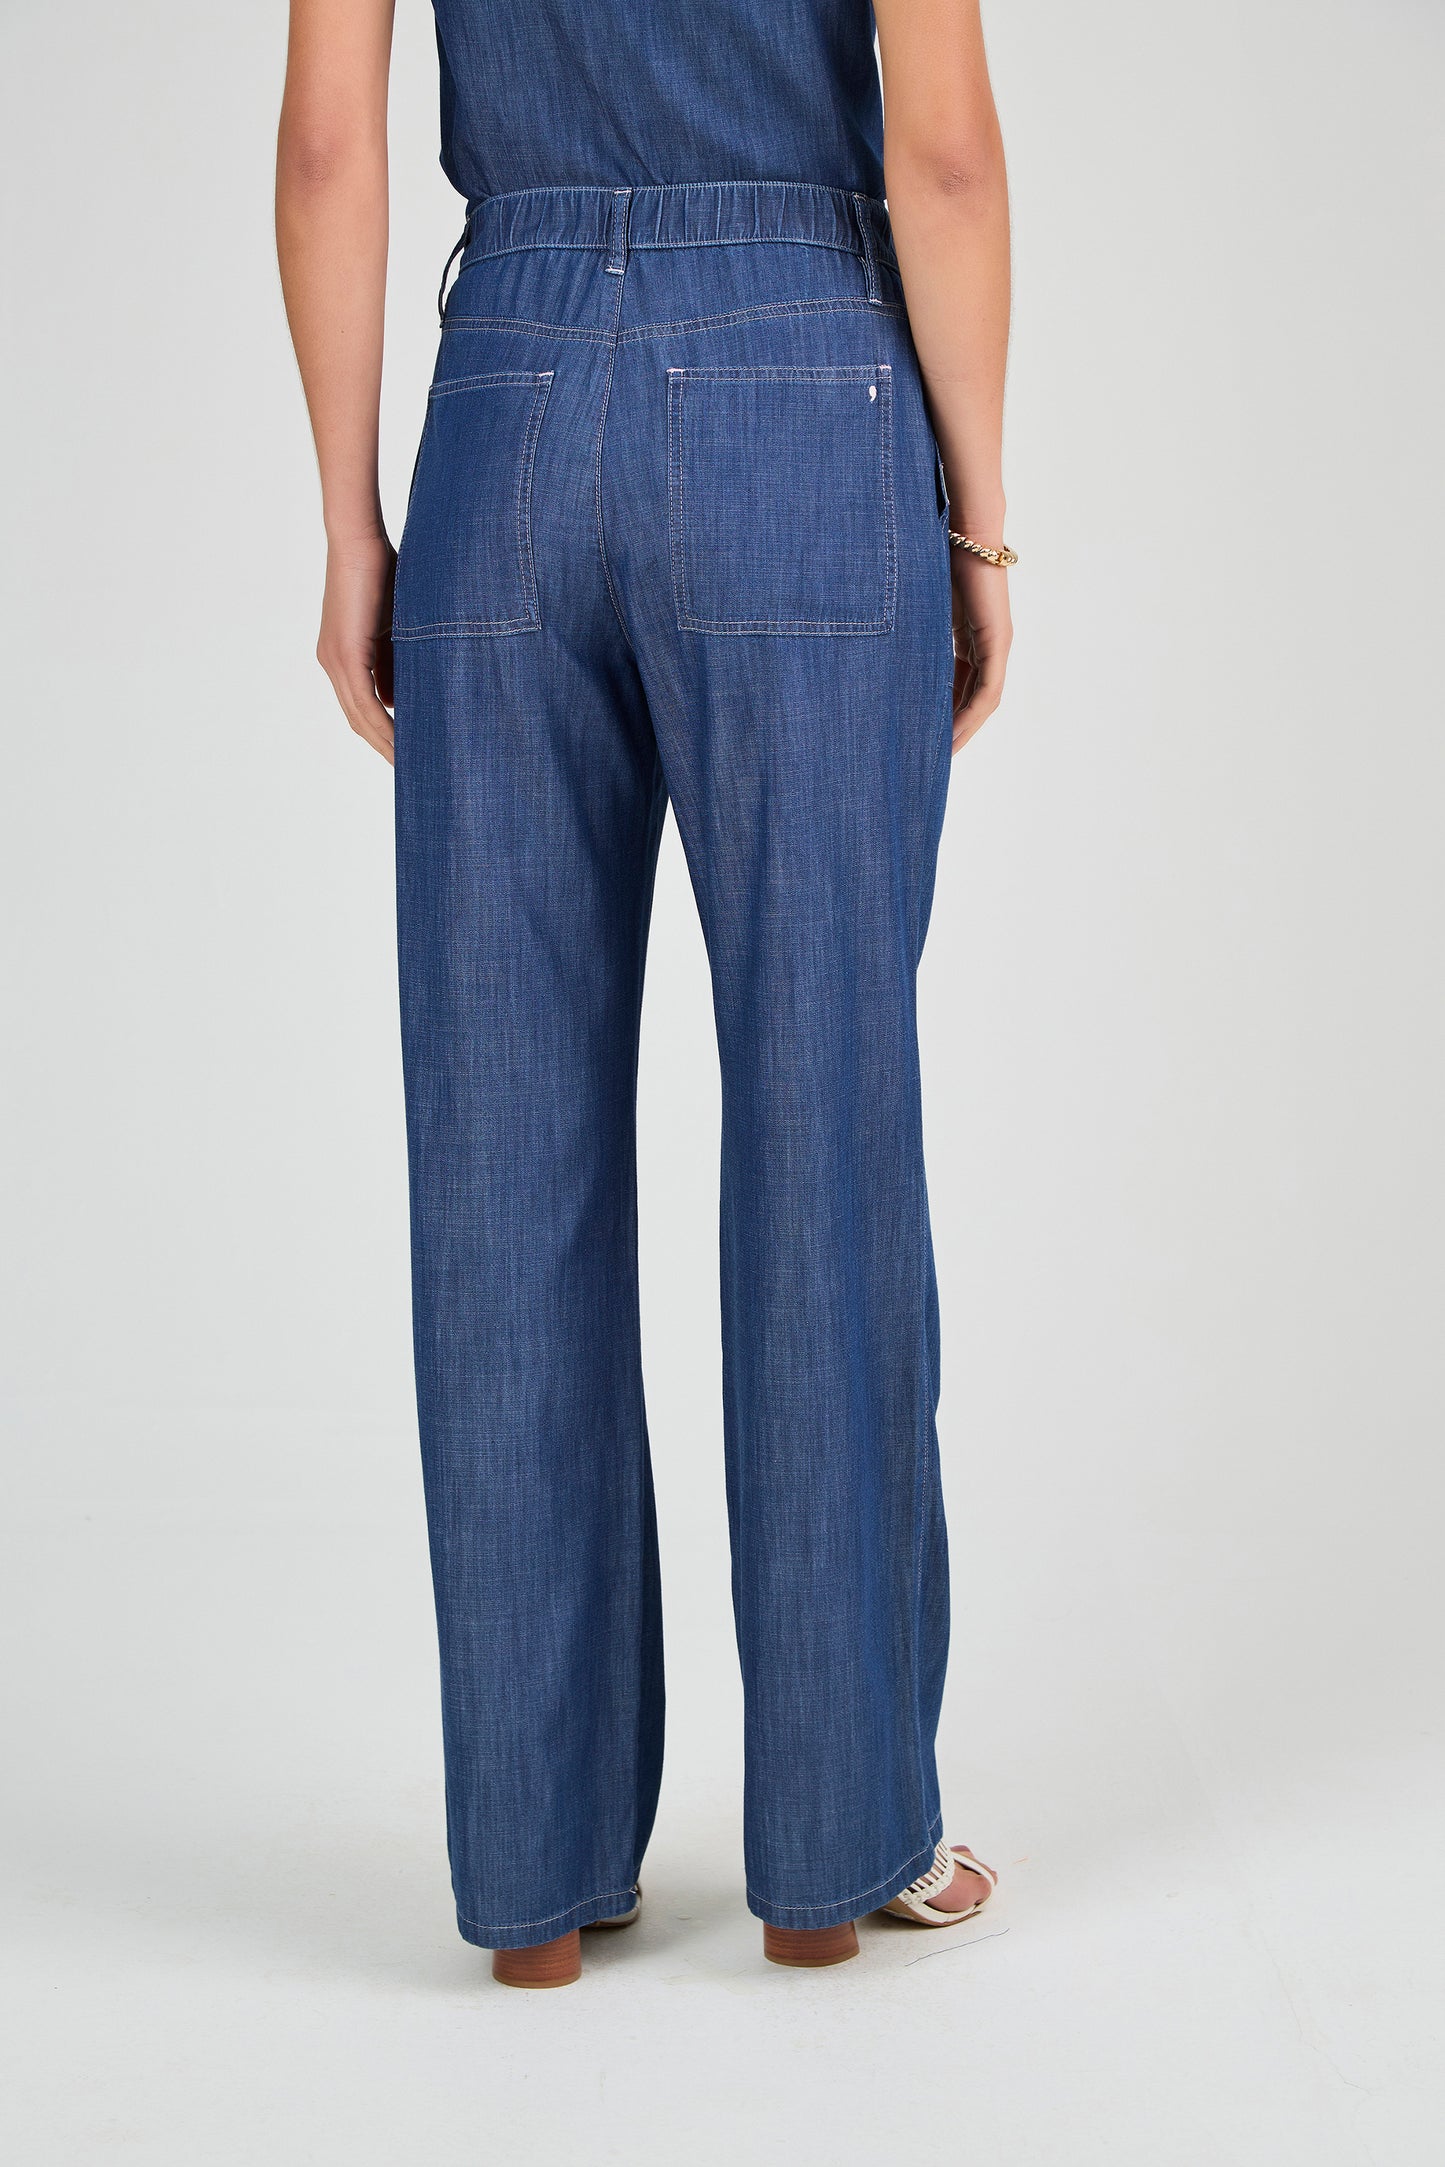 calça jeans wide leg cintura intermediária com recortes